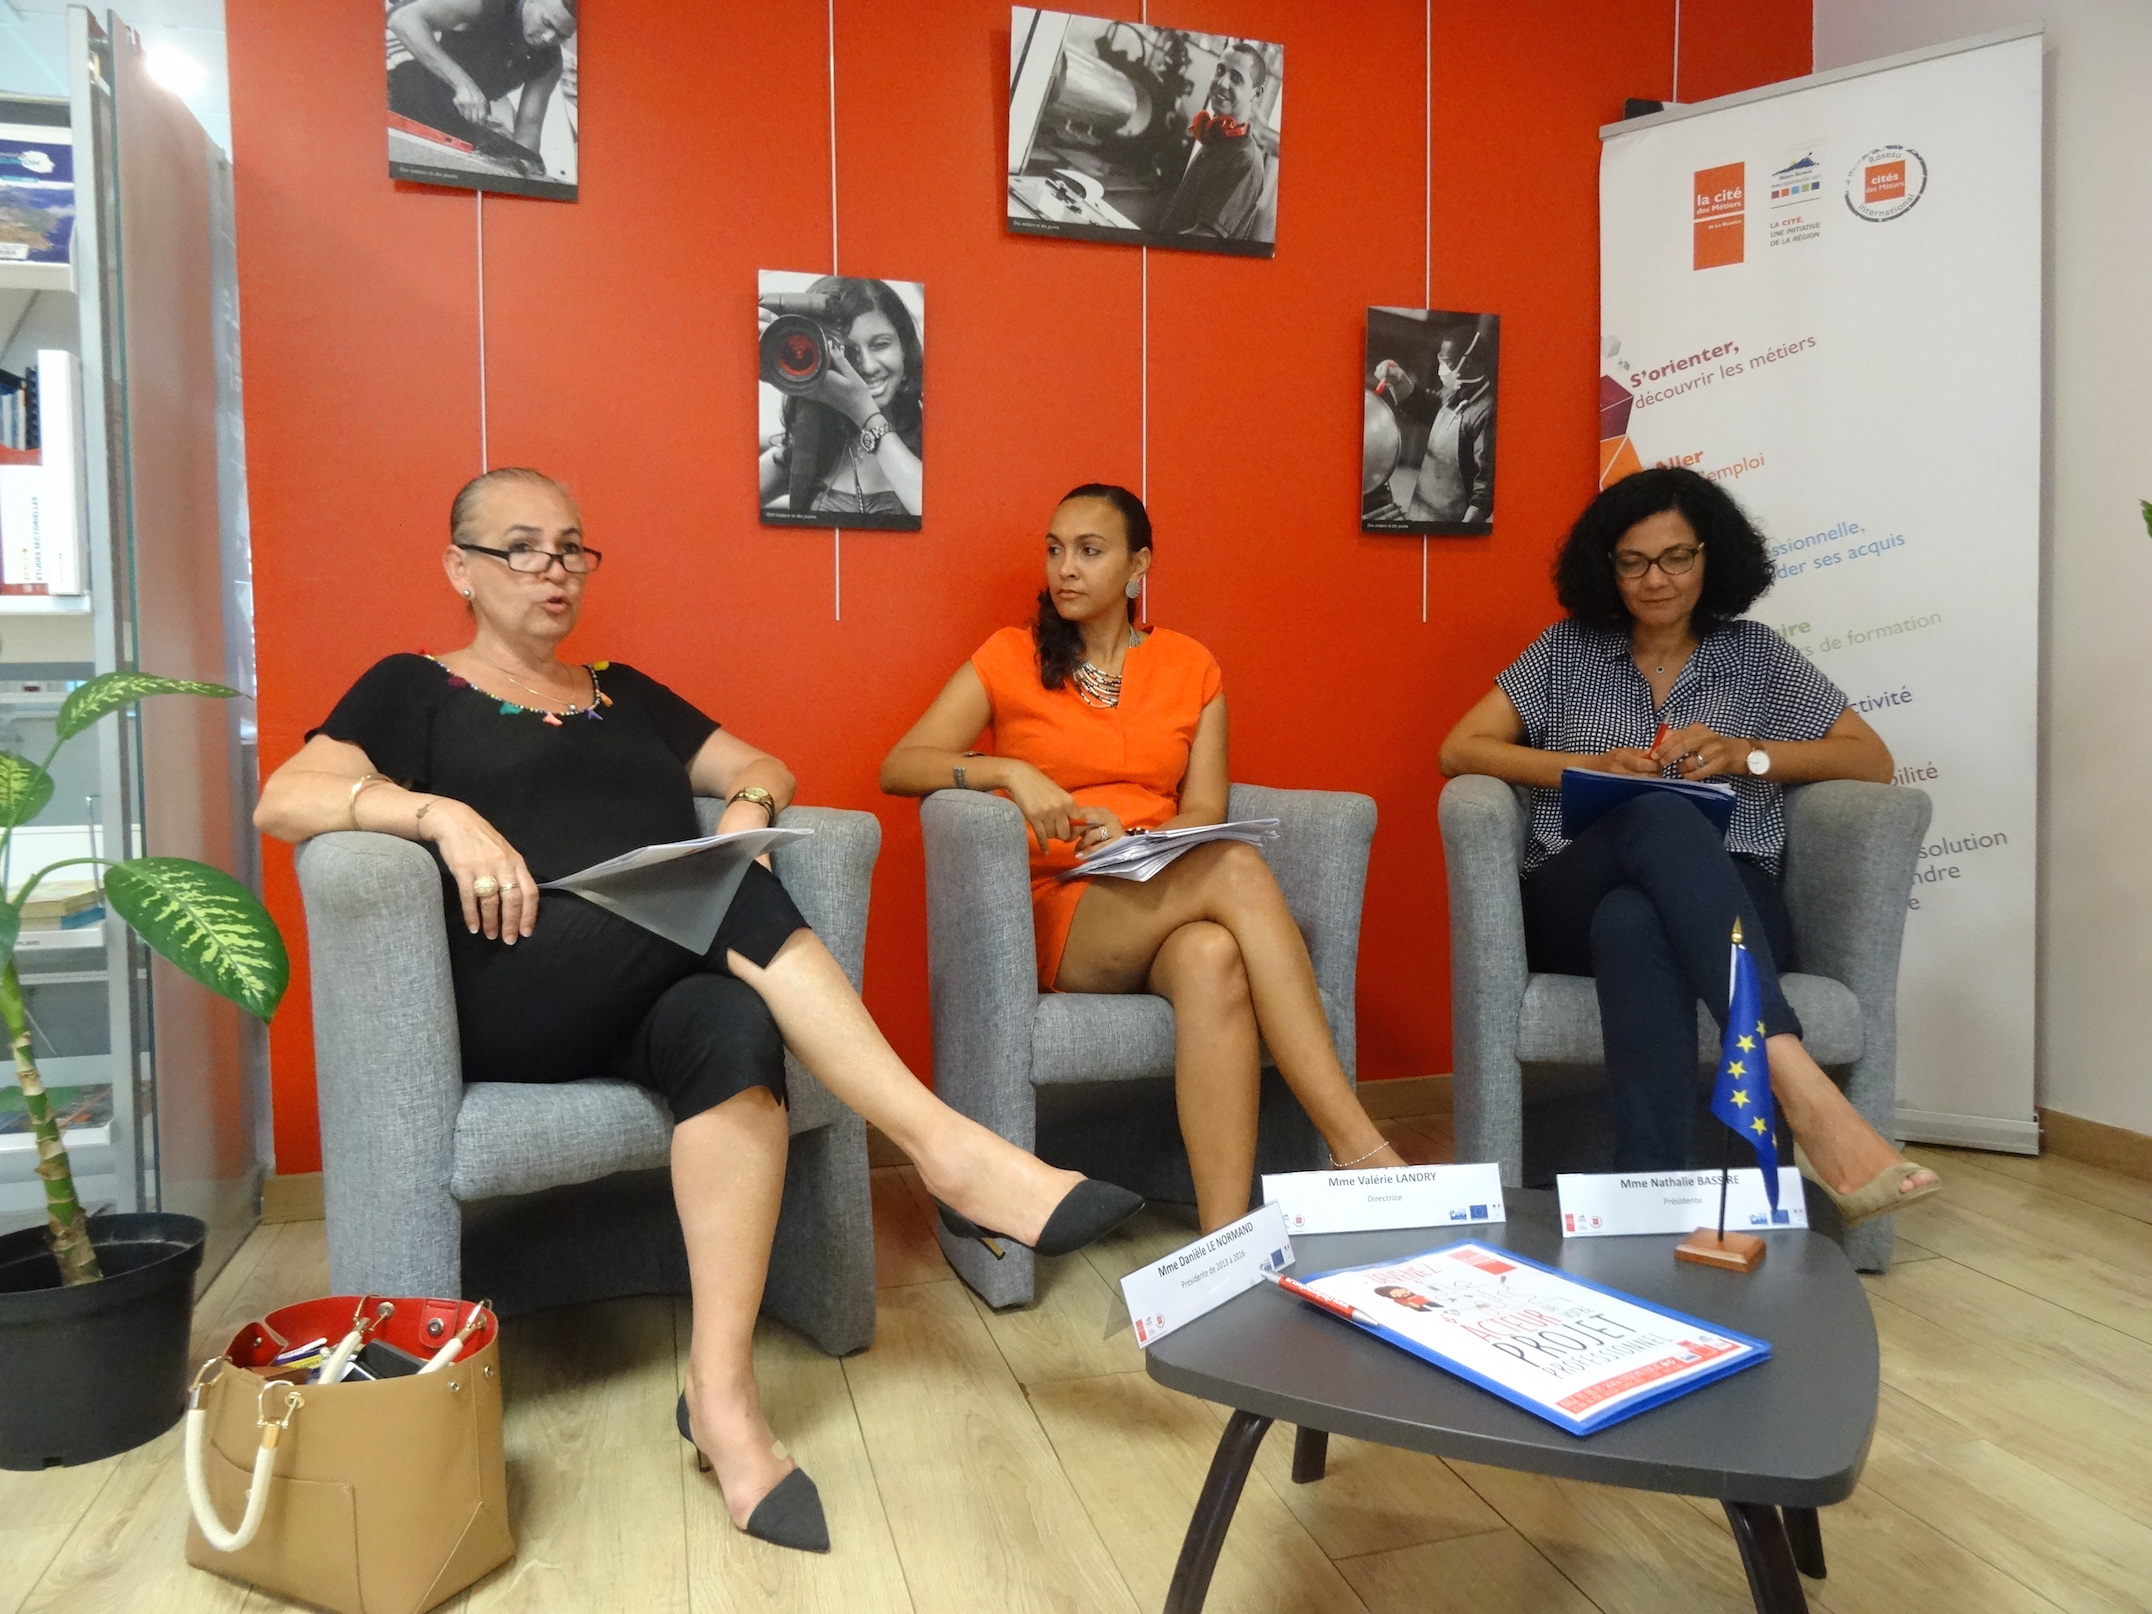 De gauche à droite : Danièle Le Normand, ex-présidente de la Cité des métiers de La Réunion, Valérie Landry, Directrice et Nathalie Bassire, Présidente de la Cité